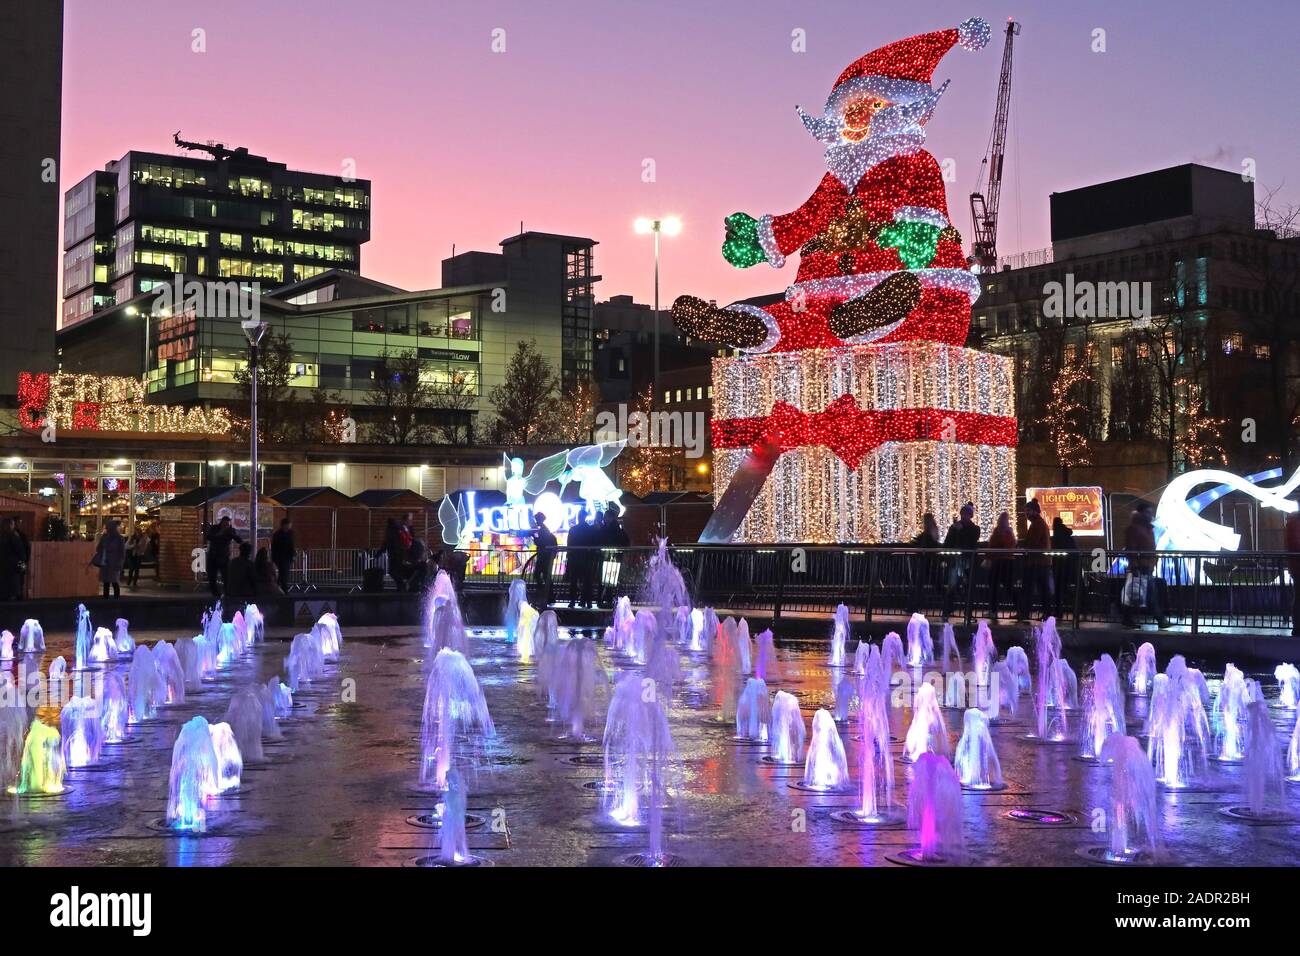 Merry Christmas, aus Piccadilly Gardens, Manchester, England, Großbritannien, M1 1RN Uhr - Weihnachtsmann in der Abenddämmerung Stockfoto